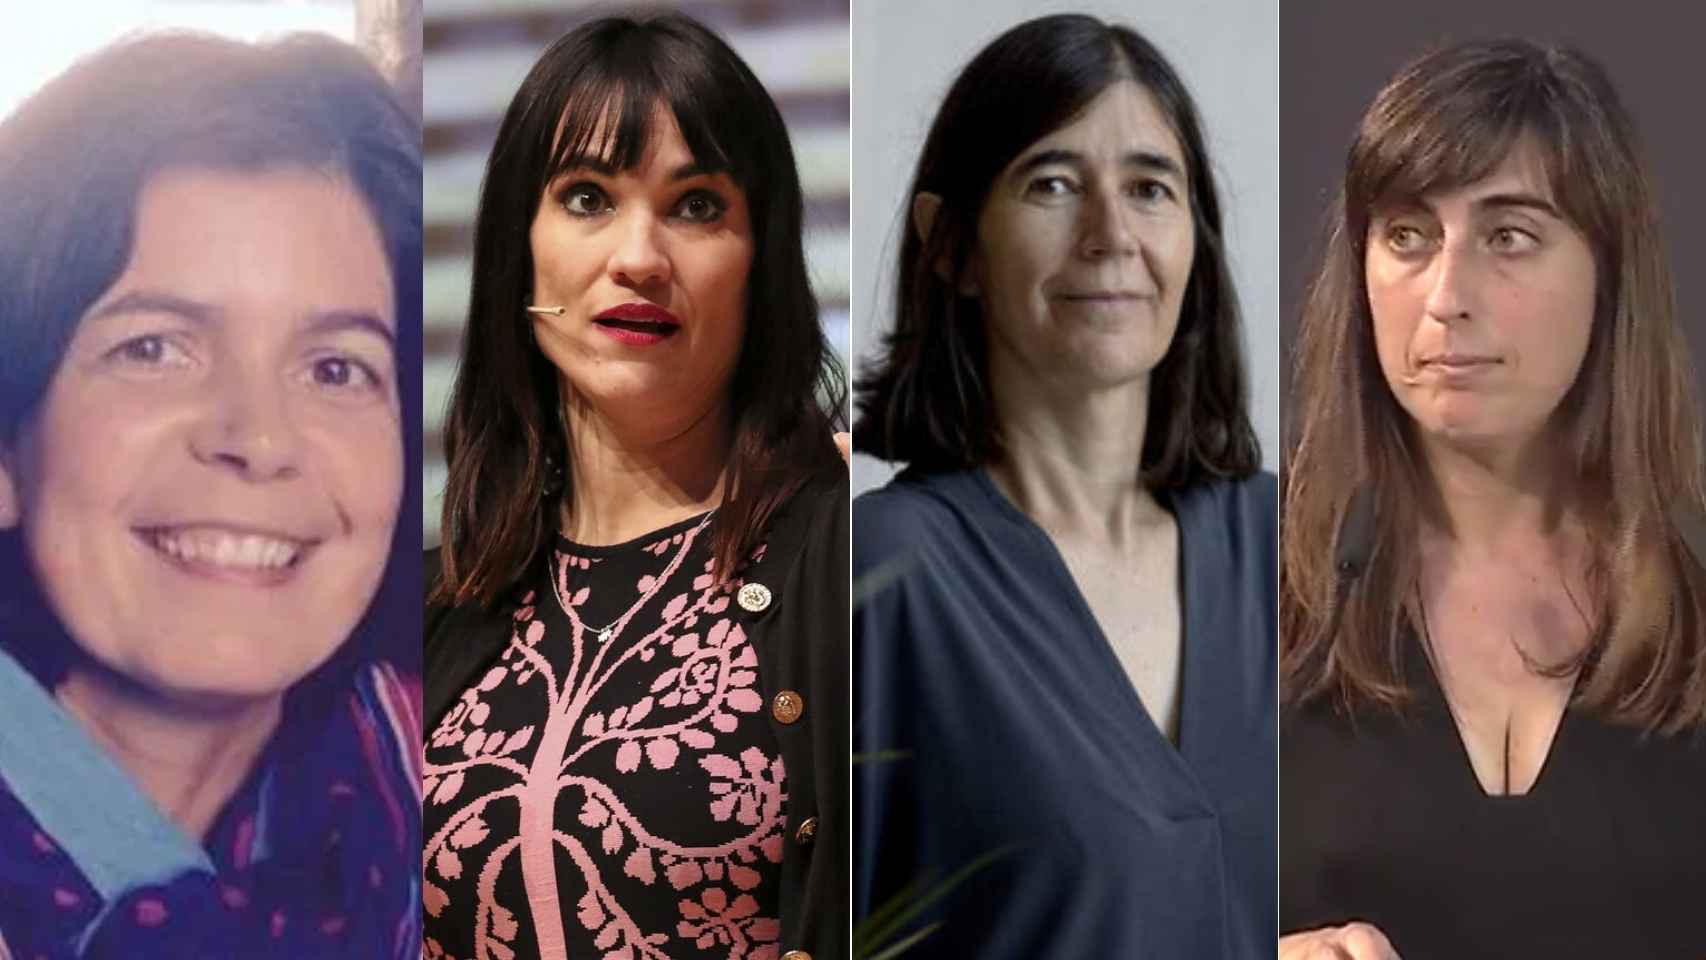 Las 4 españolas reconocidas por la CE, por orden: Paz Fernández, Irene Villa, María Blasco y Emilia Gómez.